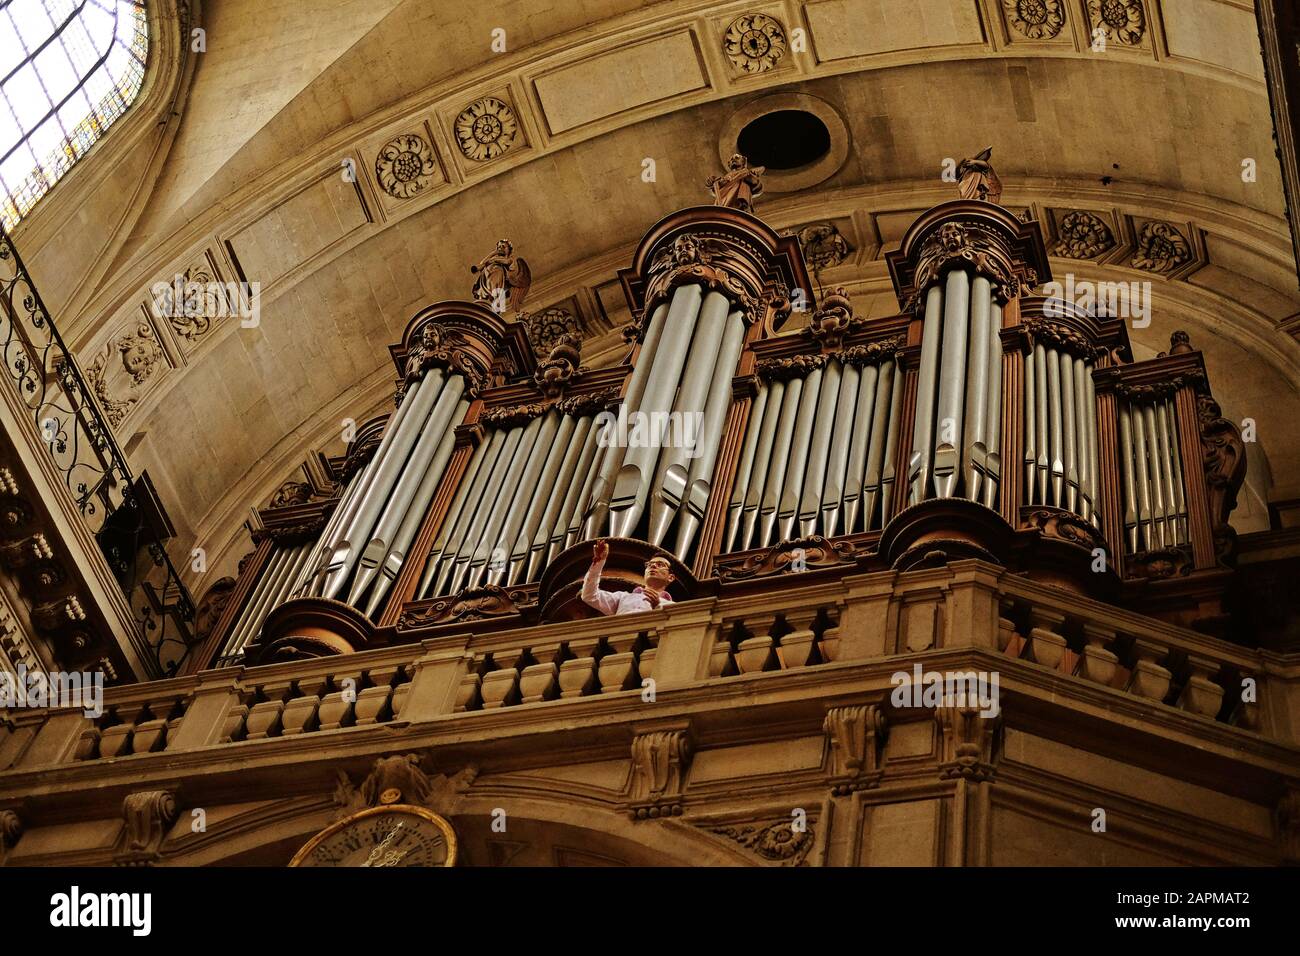 Die große Tribünenorgel, die Orgel Loft und der Organist an der Probe, Paroisse Saint-Paul Saint-Louis, die römische katholische Kultstätte des 17. Jahrhunderts in Paris Stockfoto